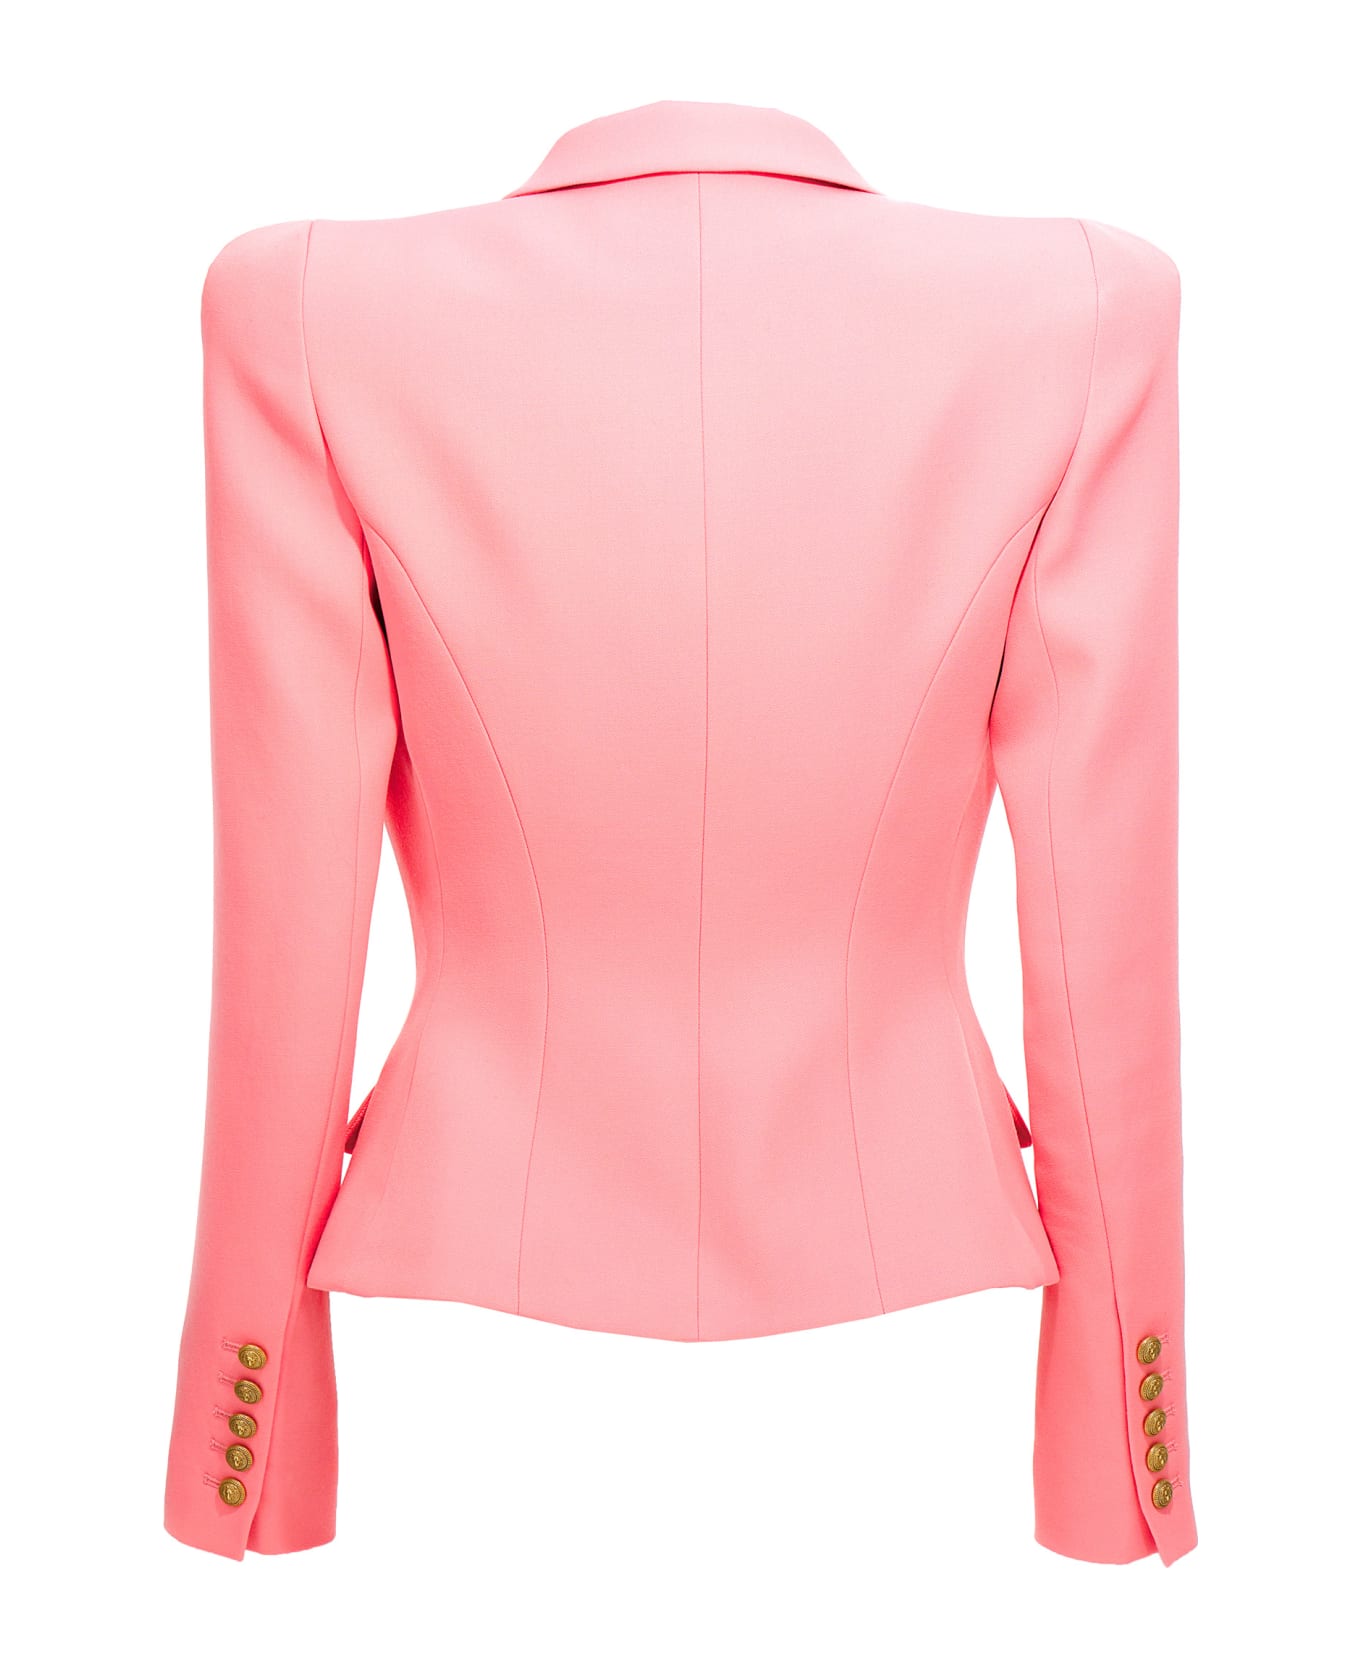 Balmain Pink Wool Jacket - Pink ブレザー